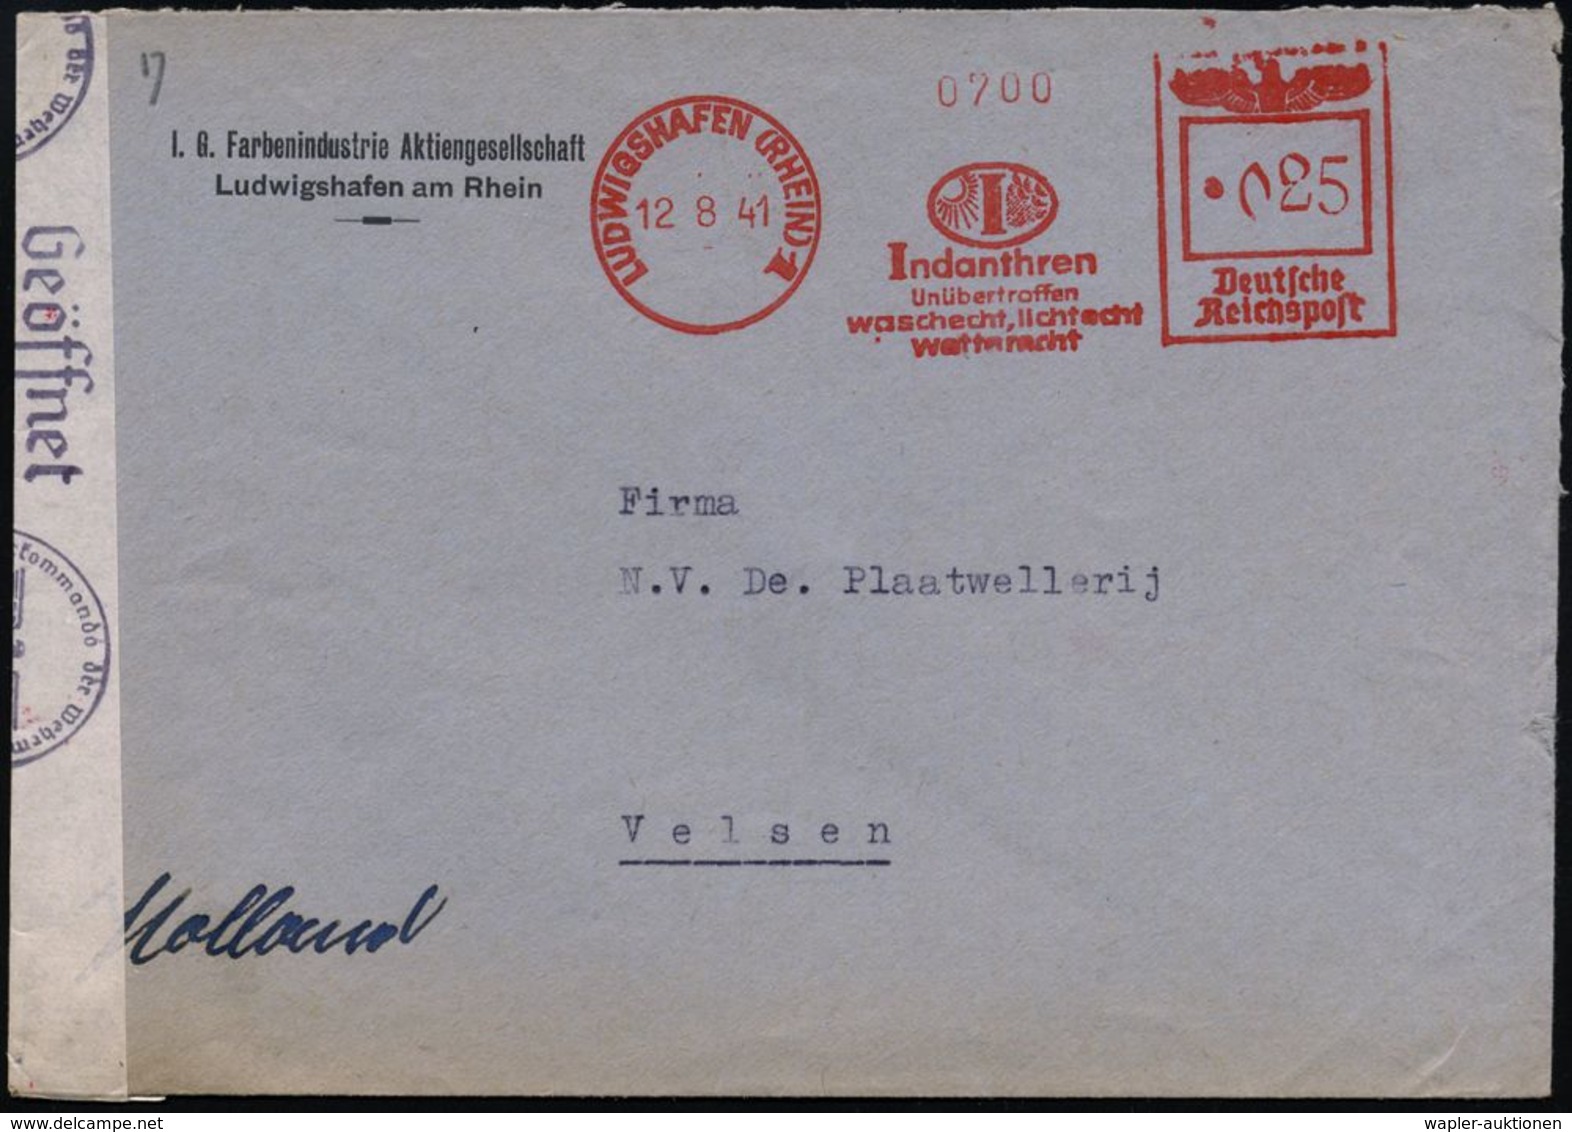 I.-G.-FARBEN INDUSTRIE, TOCHTERFIRMEN & NACHFOLGER : LUDWIGSHAFEN (RHEIN)1/ Indanthren/ ..lichtecht/ Wetterfest 1941 (12 - Chemie